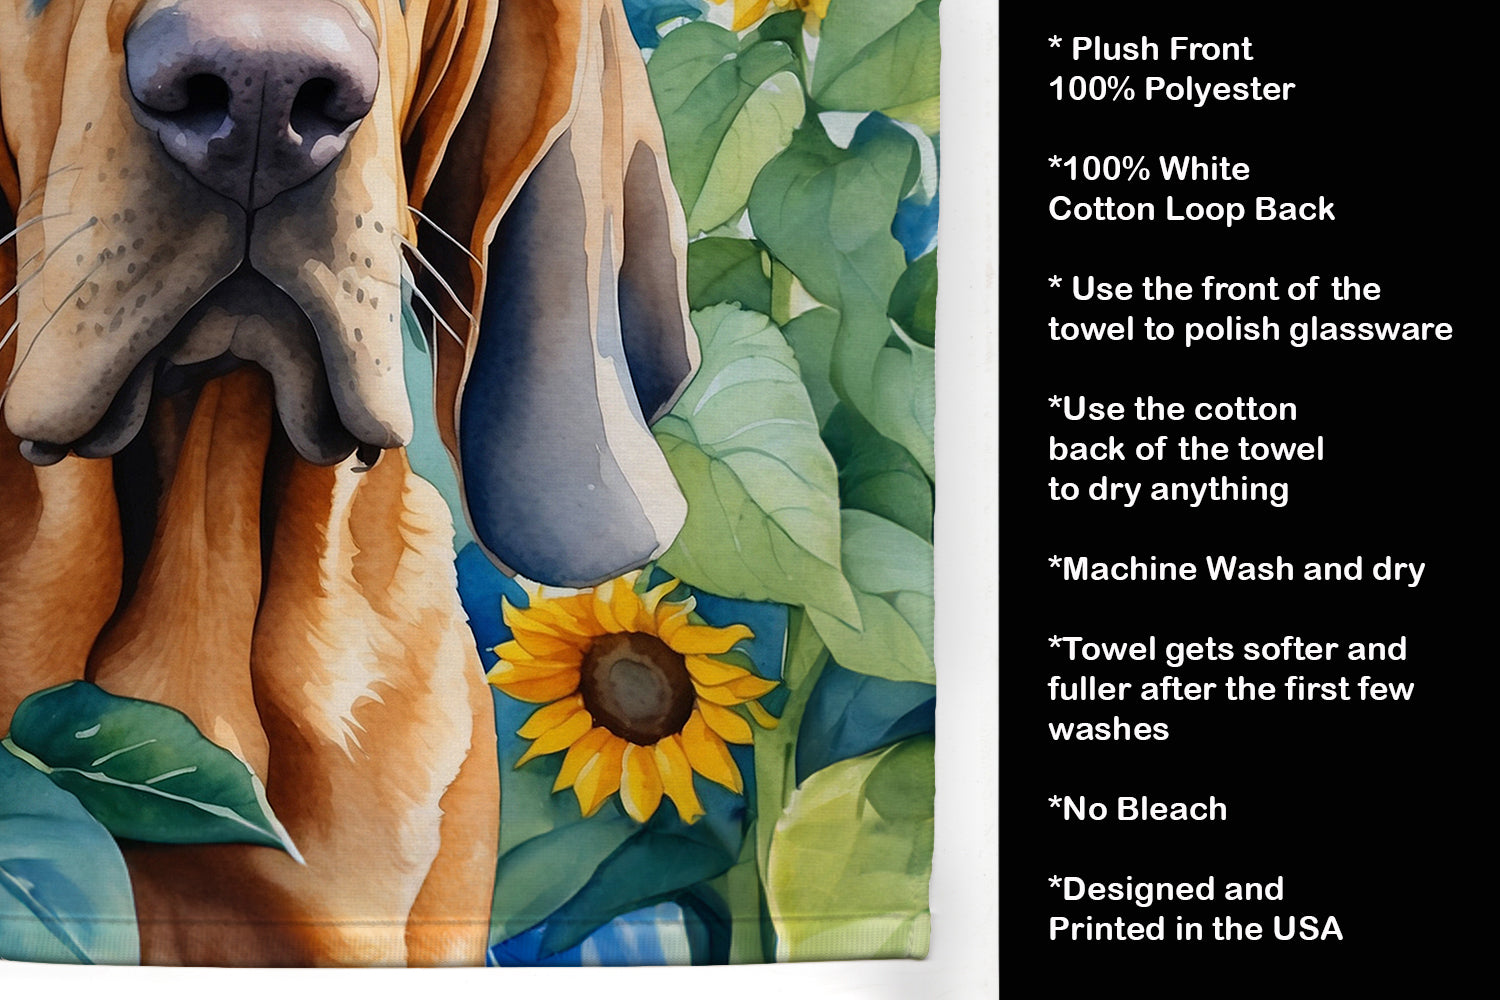 Bloodhound in Sunflowers Kitchen Towel